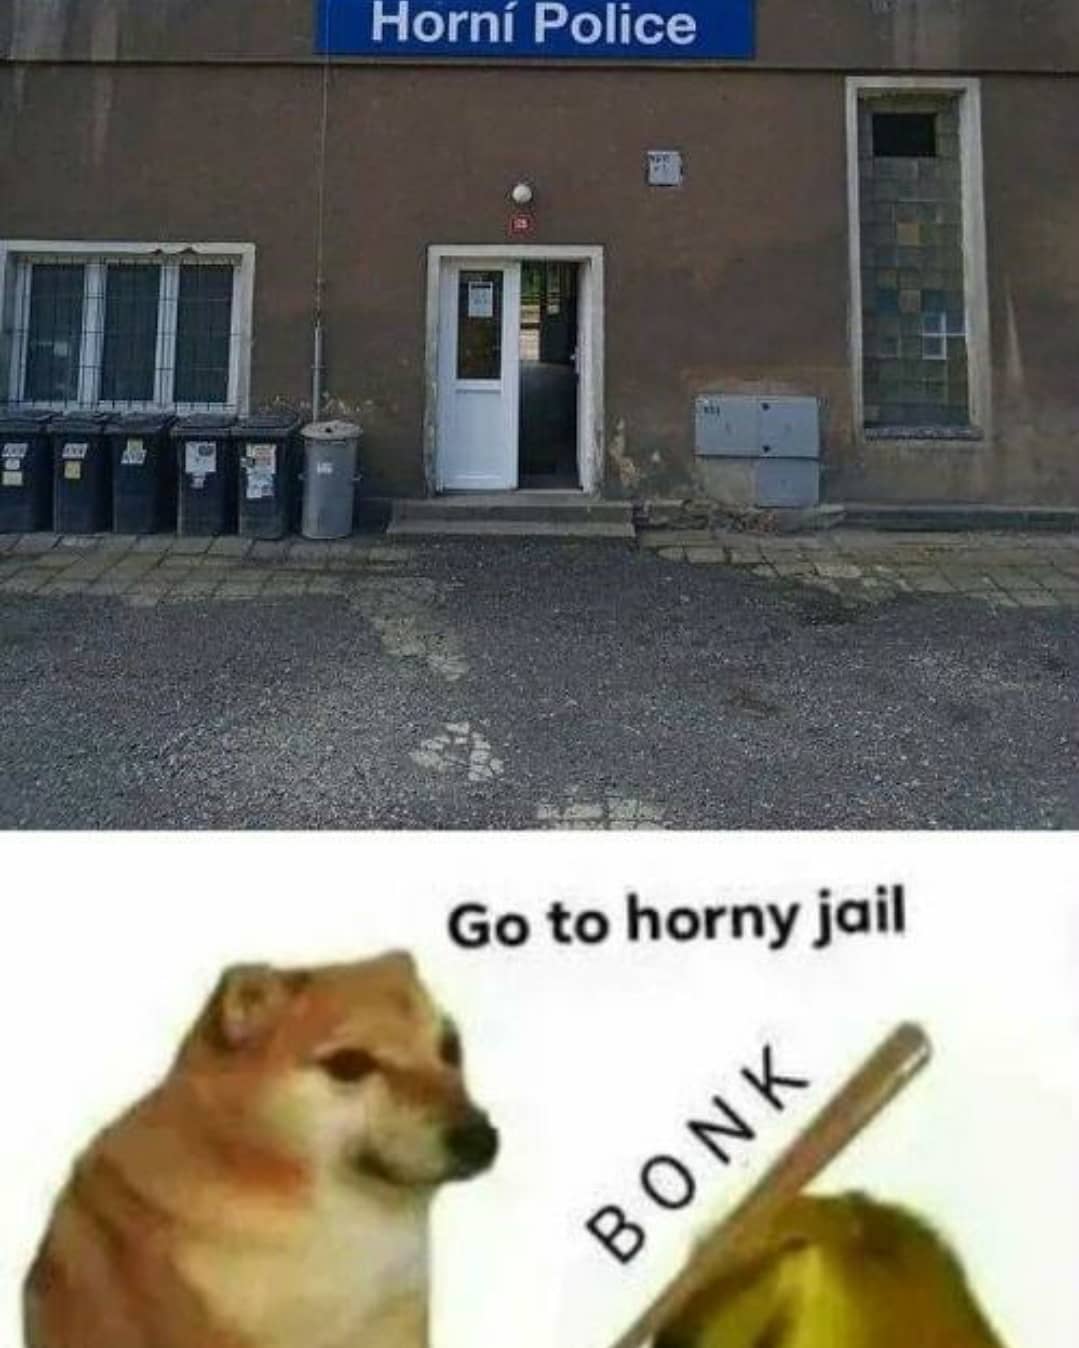 dank memes - go to horny jail meme - Horn Police Go to horny jail Bonk